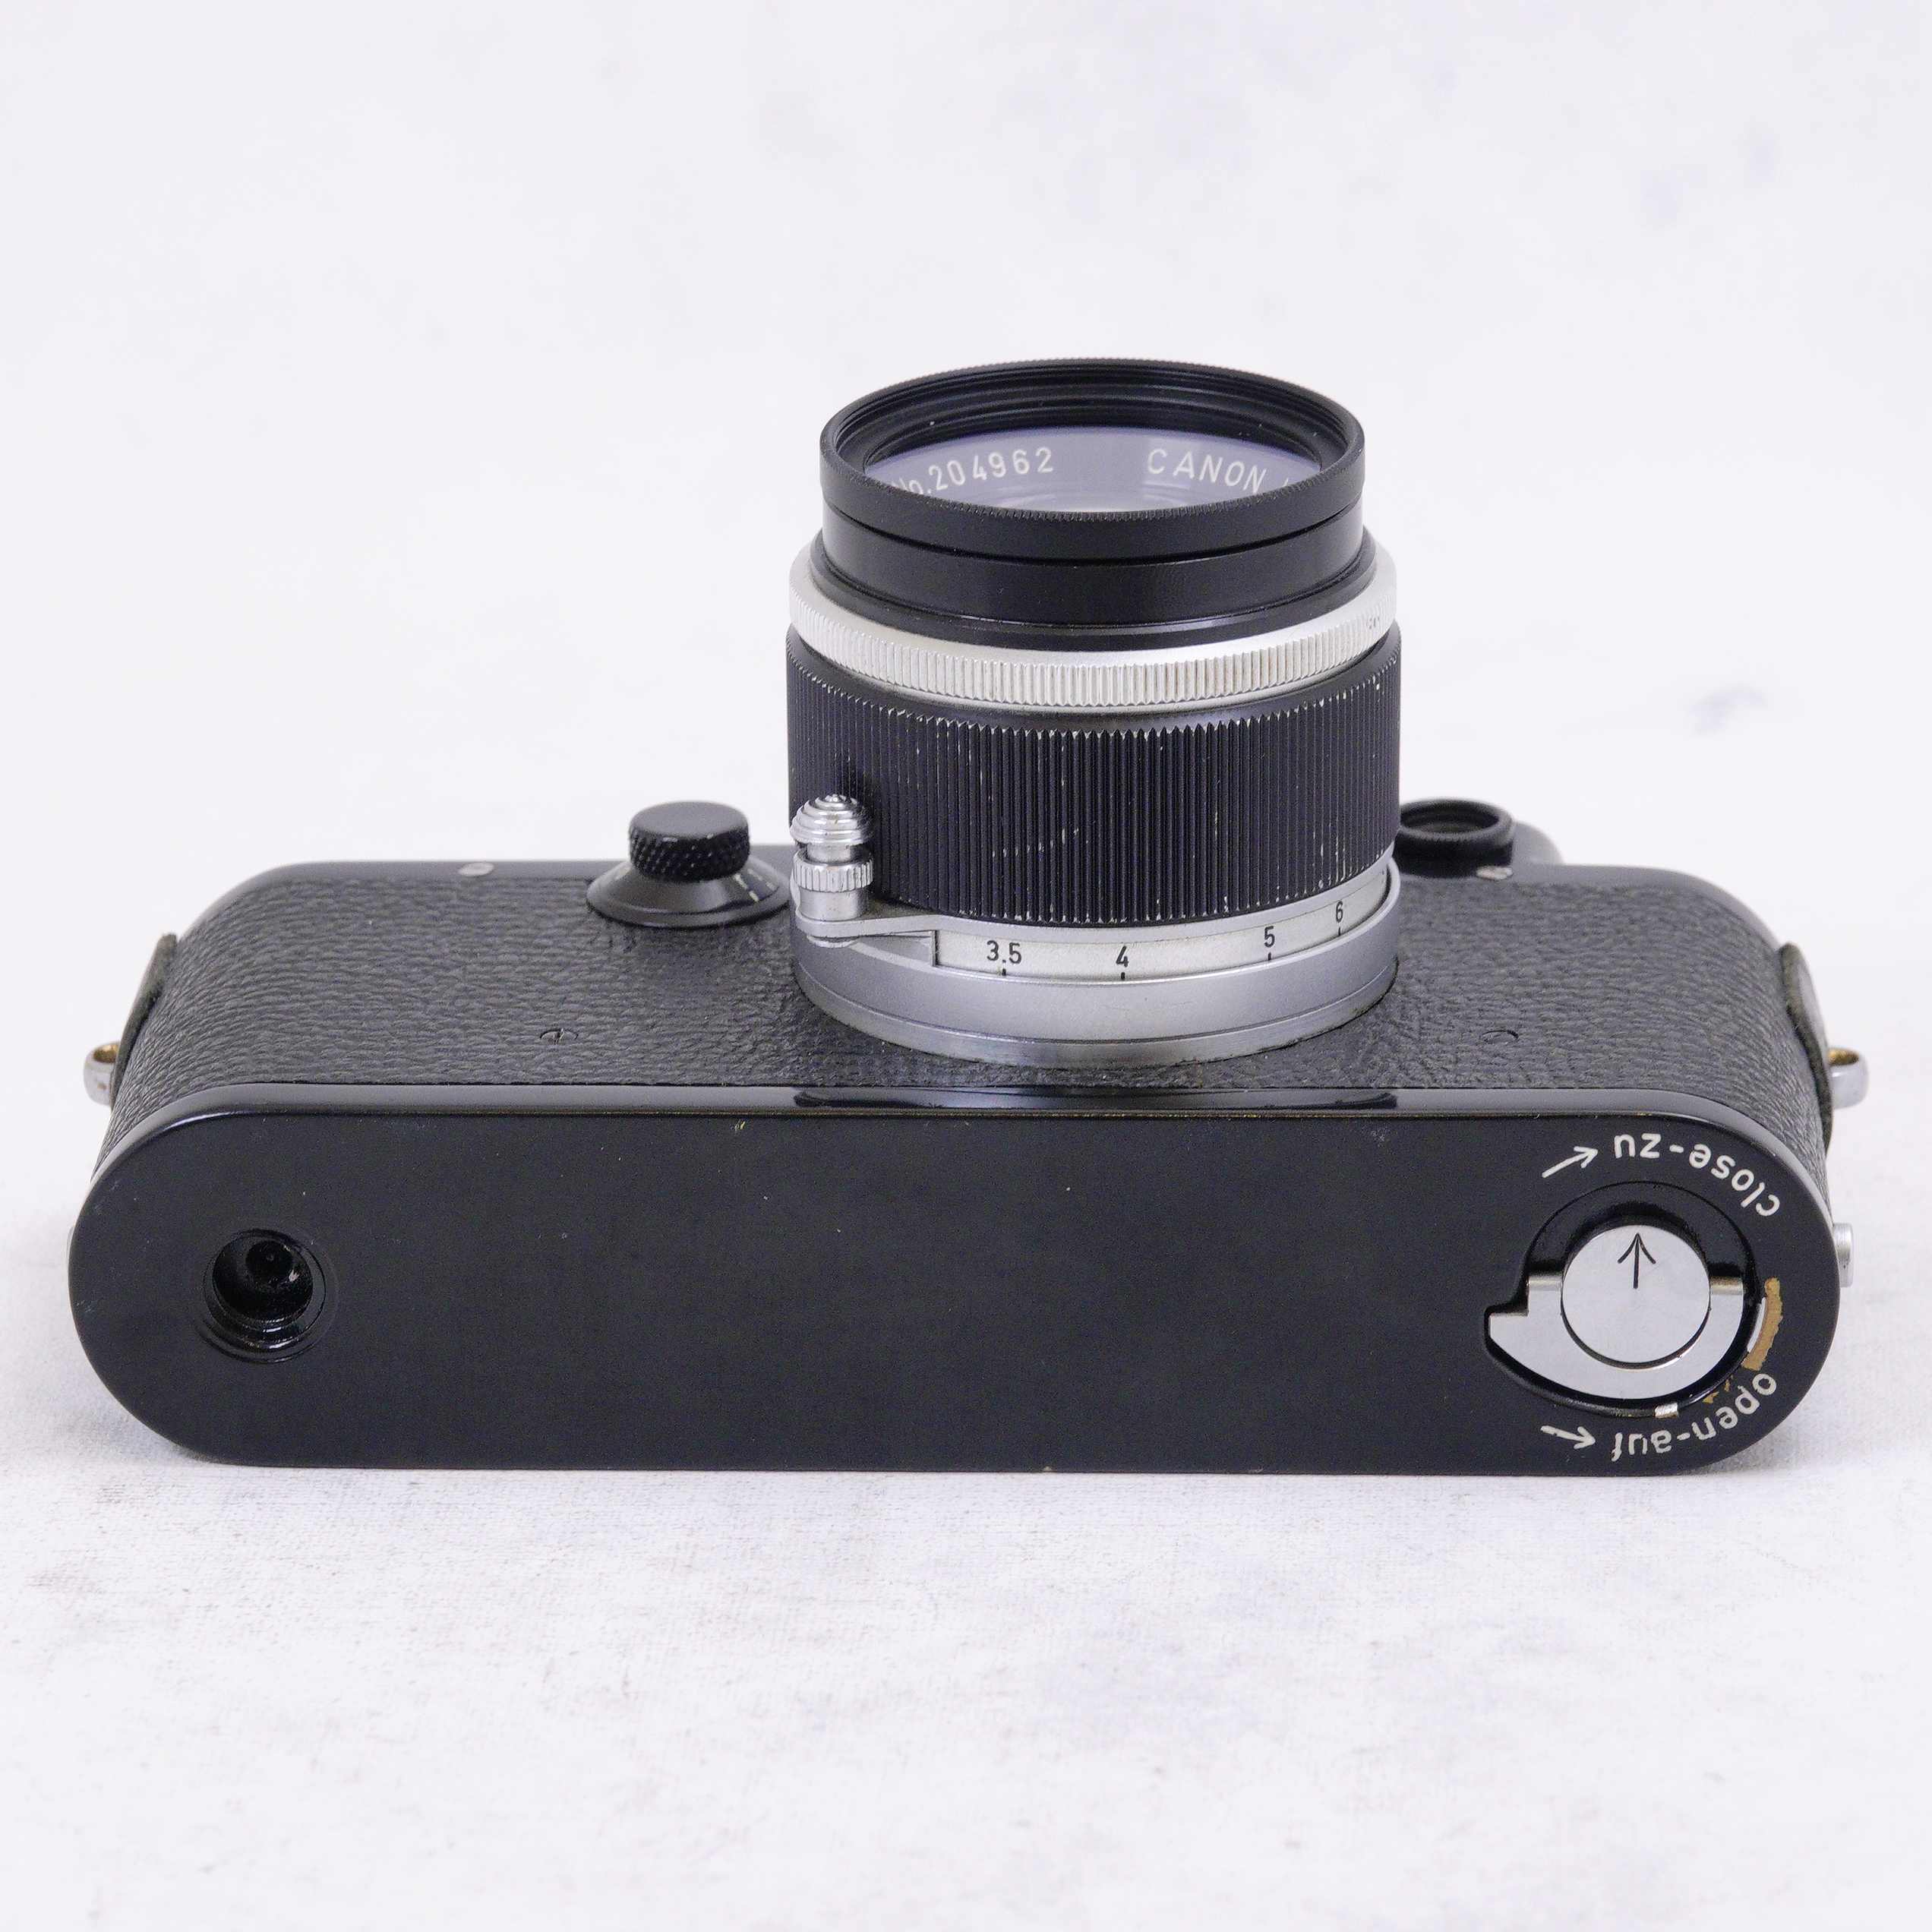 Leica IIIf Black con Lente Canon LTM 50mm f1.8 - Usado